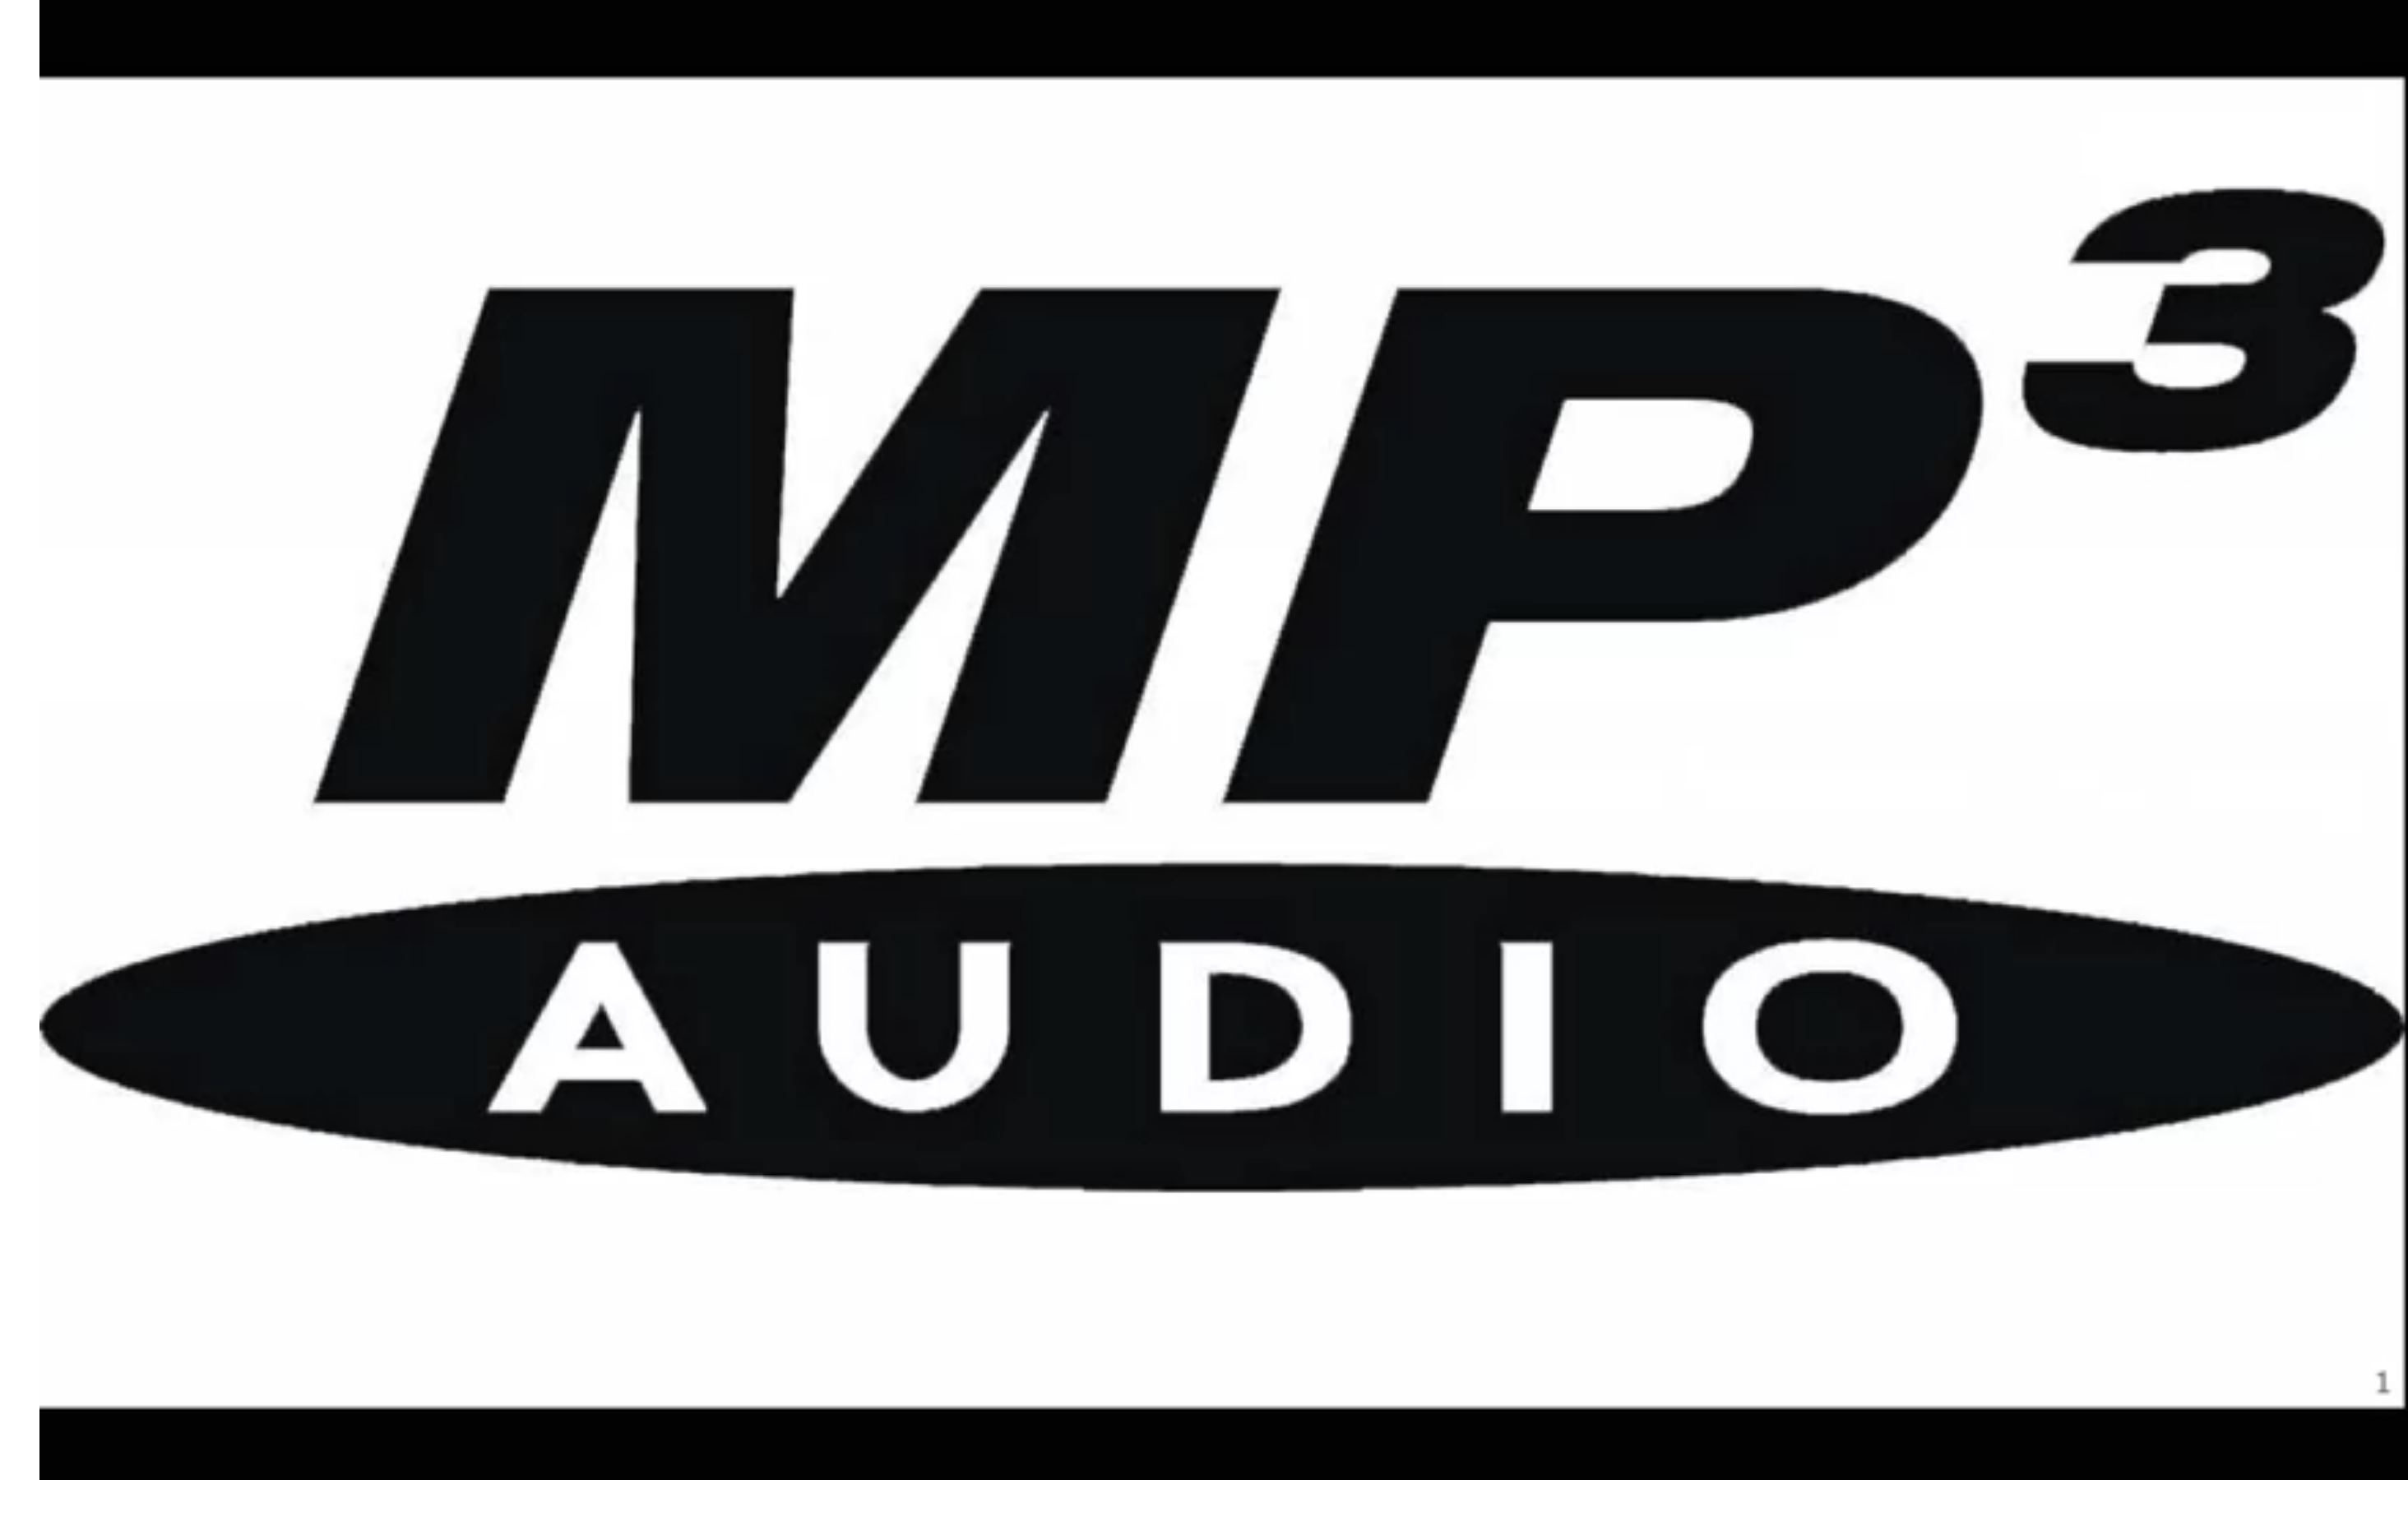 mp3 audio logo